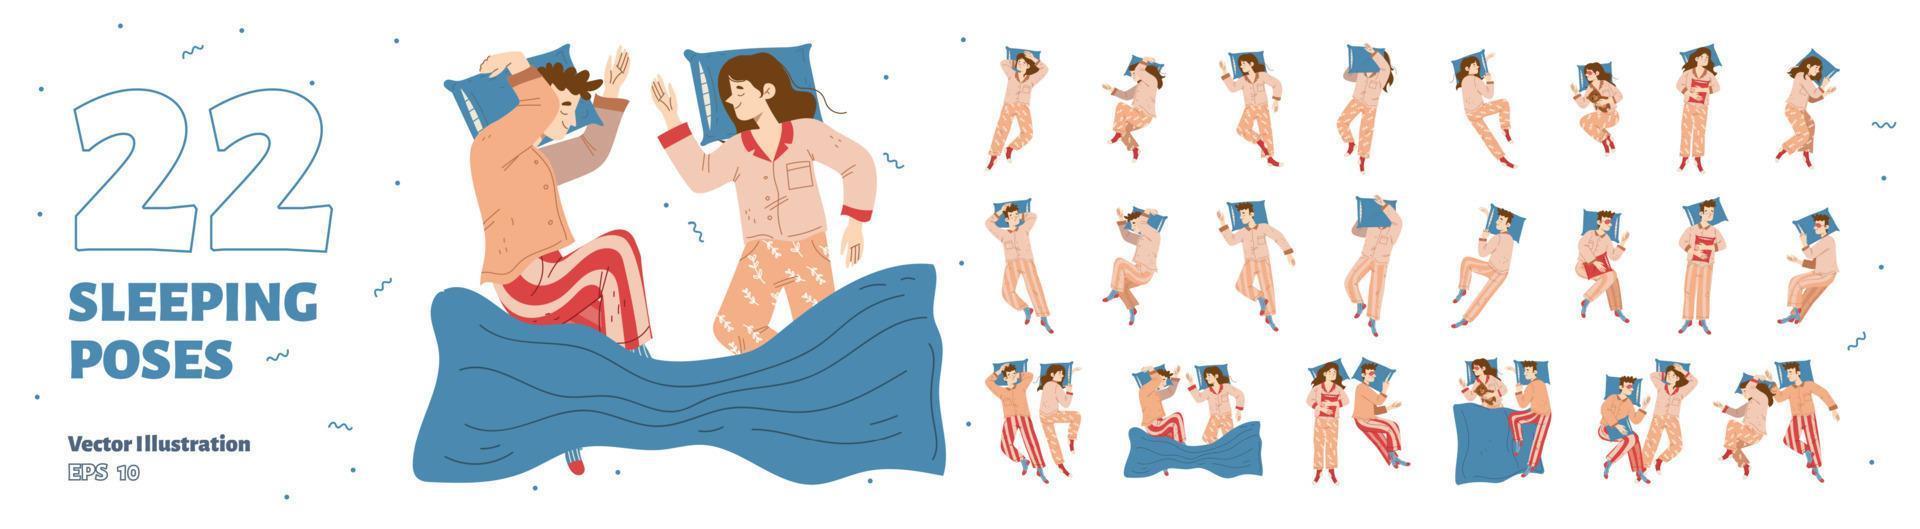 conjunto de hombres y mujeres durmiendo poses, paquete vectorial vector